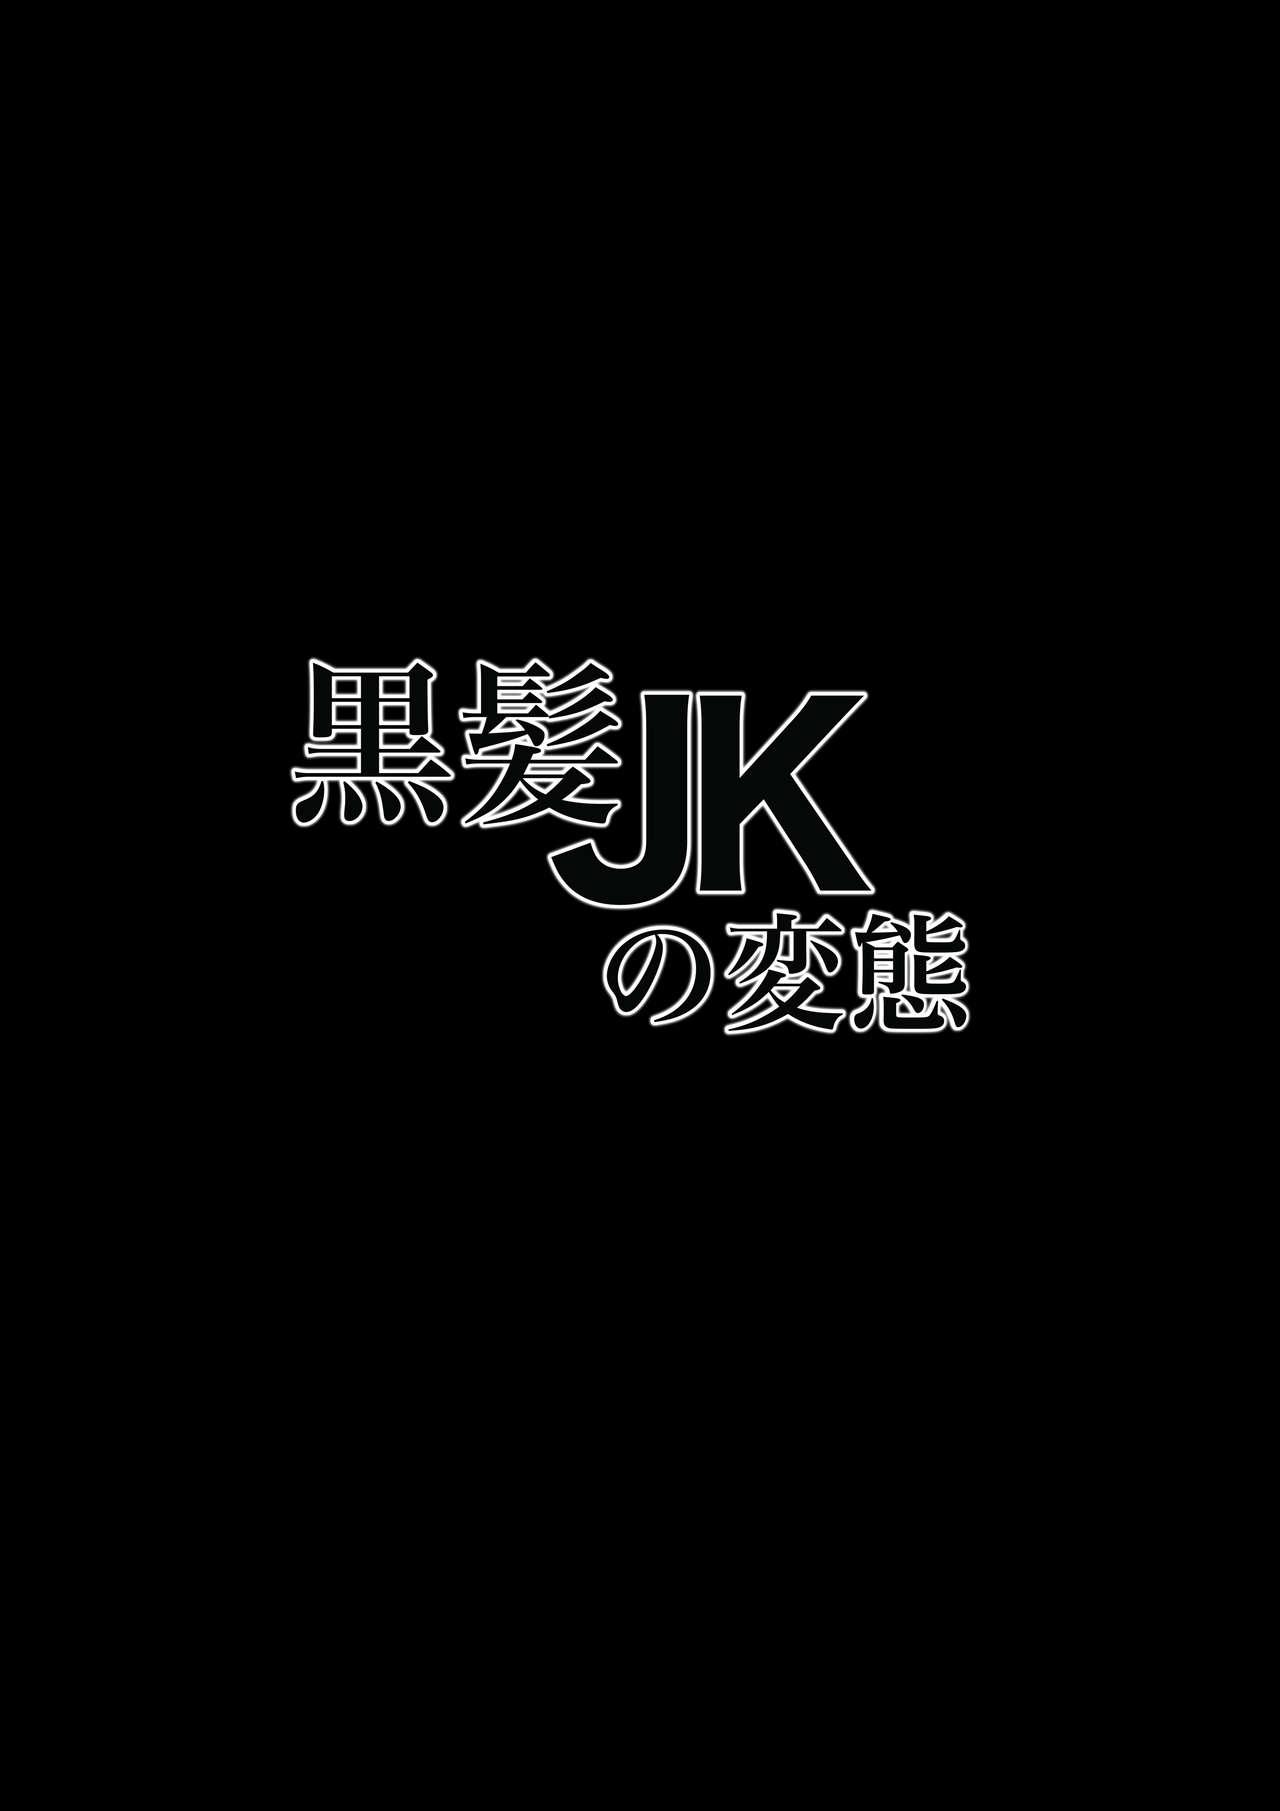 Kurokami JK no hentai 1